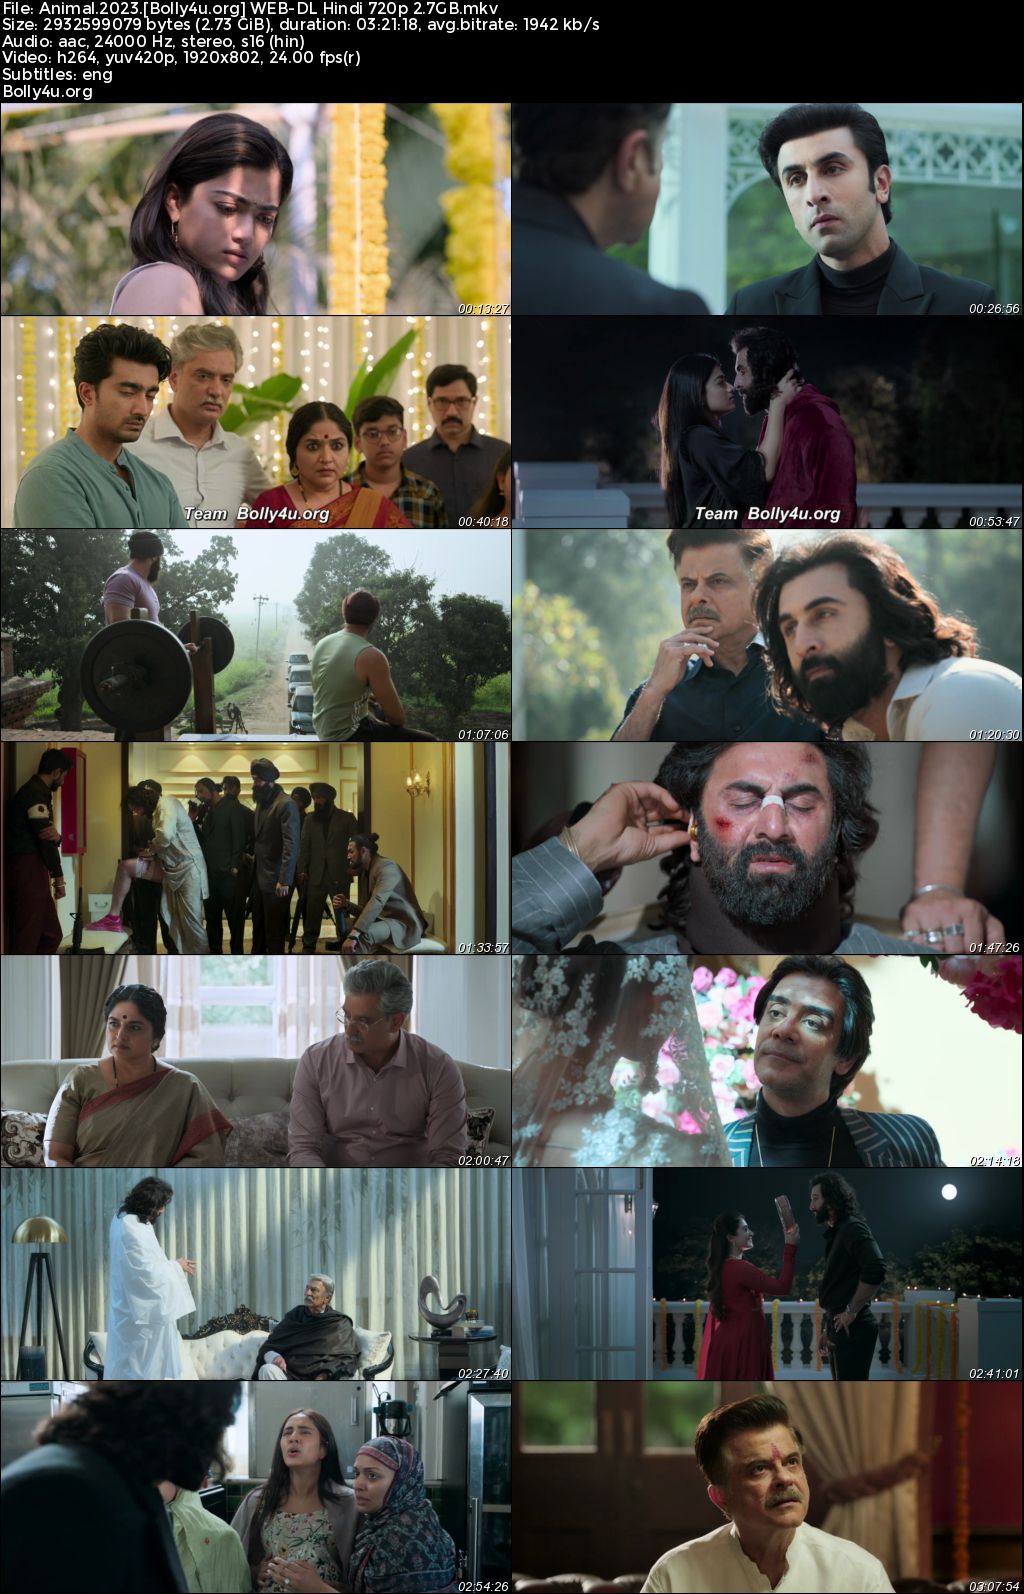 Animal 2023 WEB-DL Hindi Full Movie Download 1080p 720p 480p